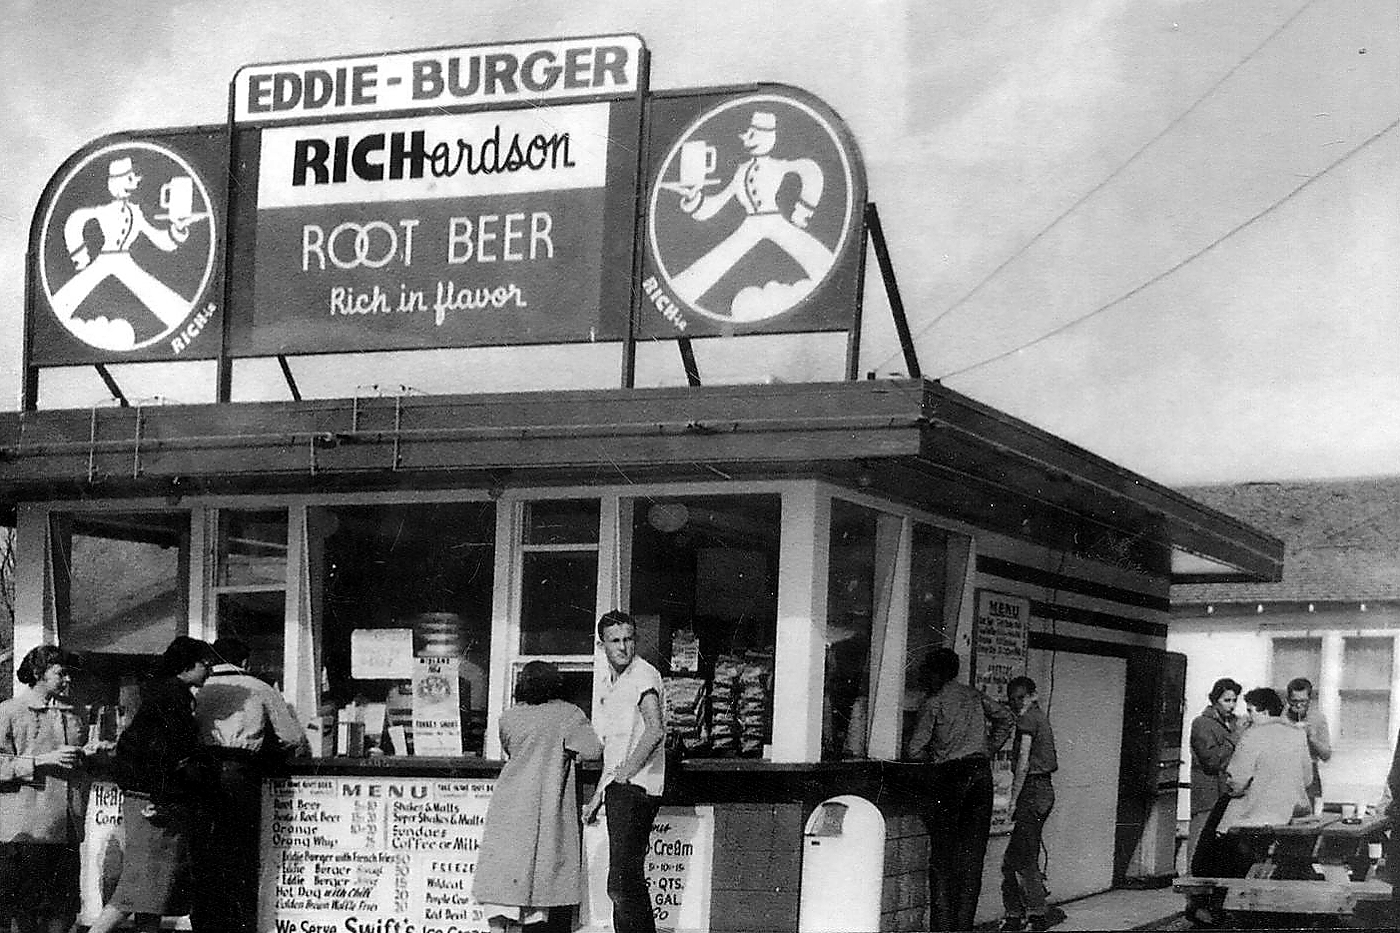 Eddie-Burger in Midland in 1950s